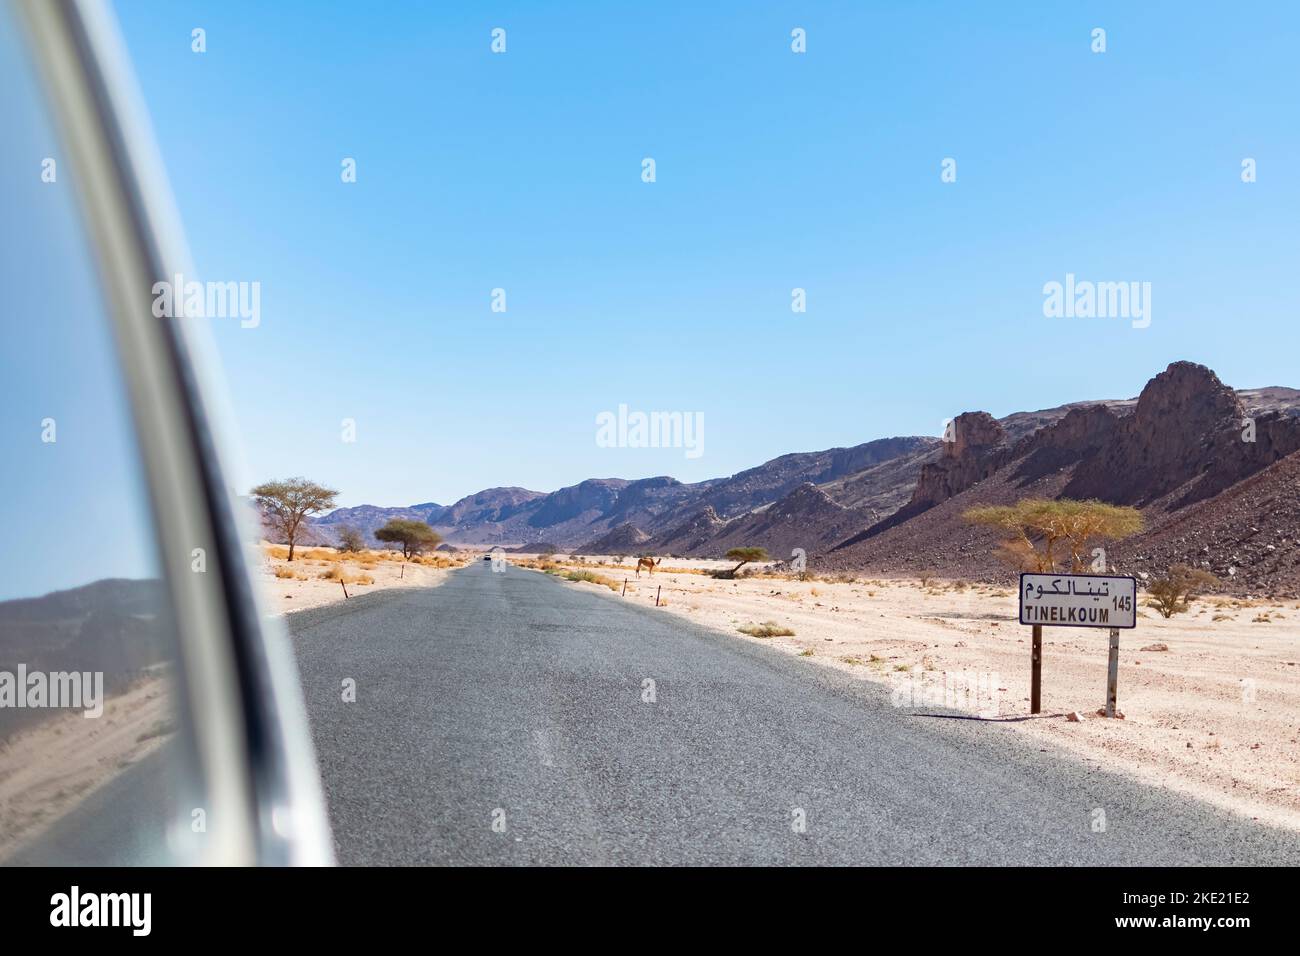 Tin El Koum, Algeria. Guardando dal finestrino posteriore 4X4 auto Tinelkoum targa deserto strada con un dromedario sul reg, Montagne Rocciose e cielo blu. Foto Stock